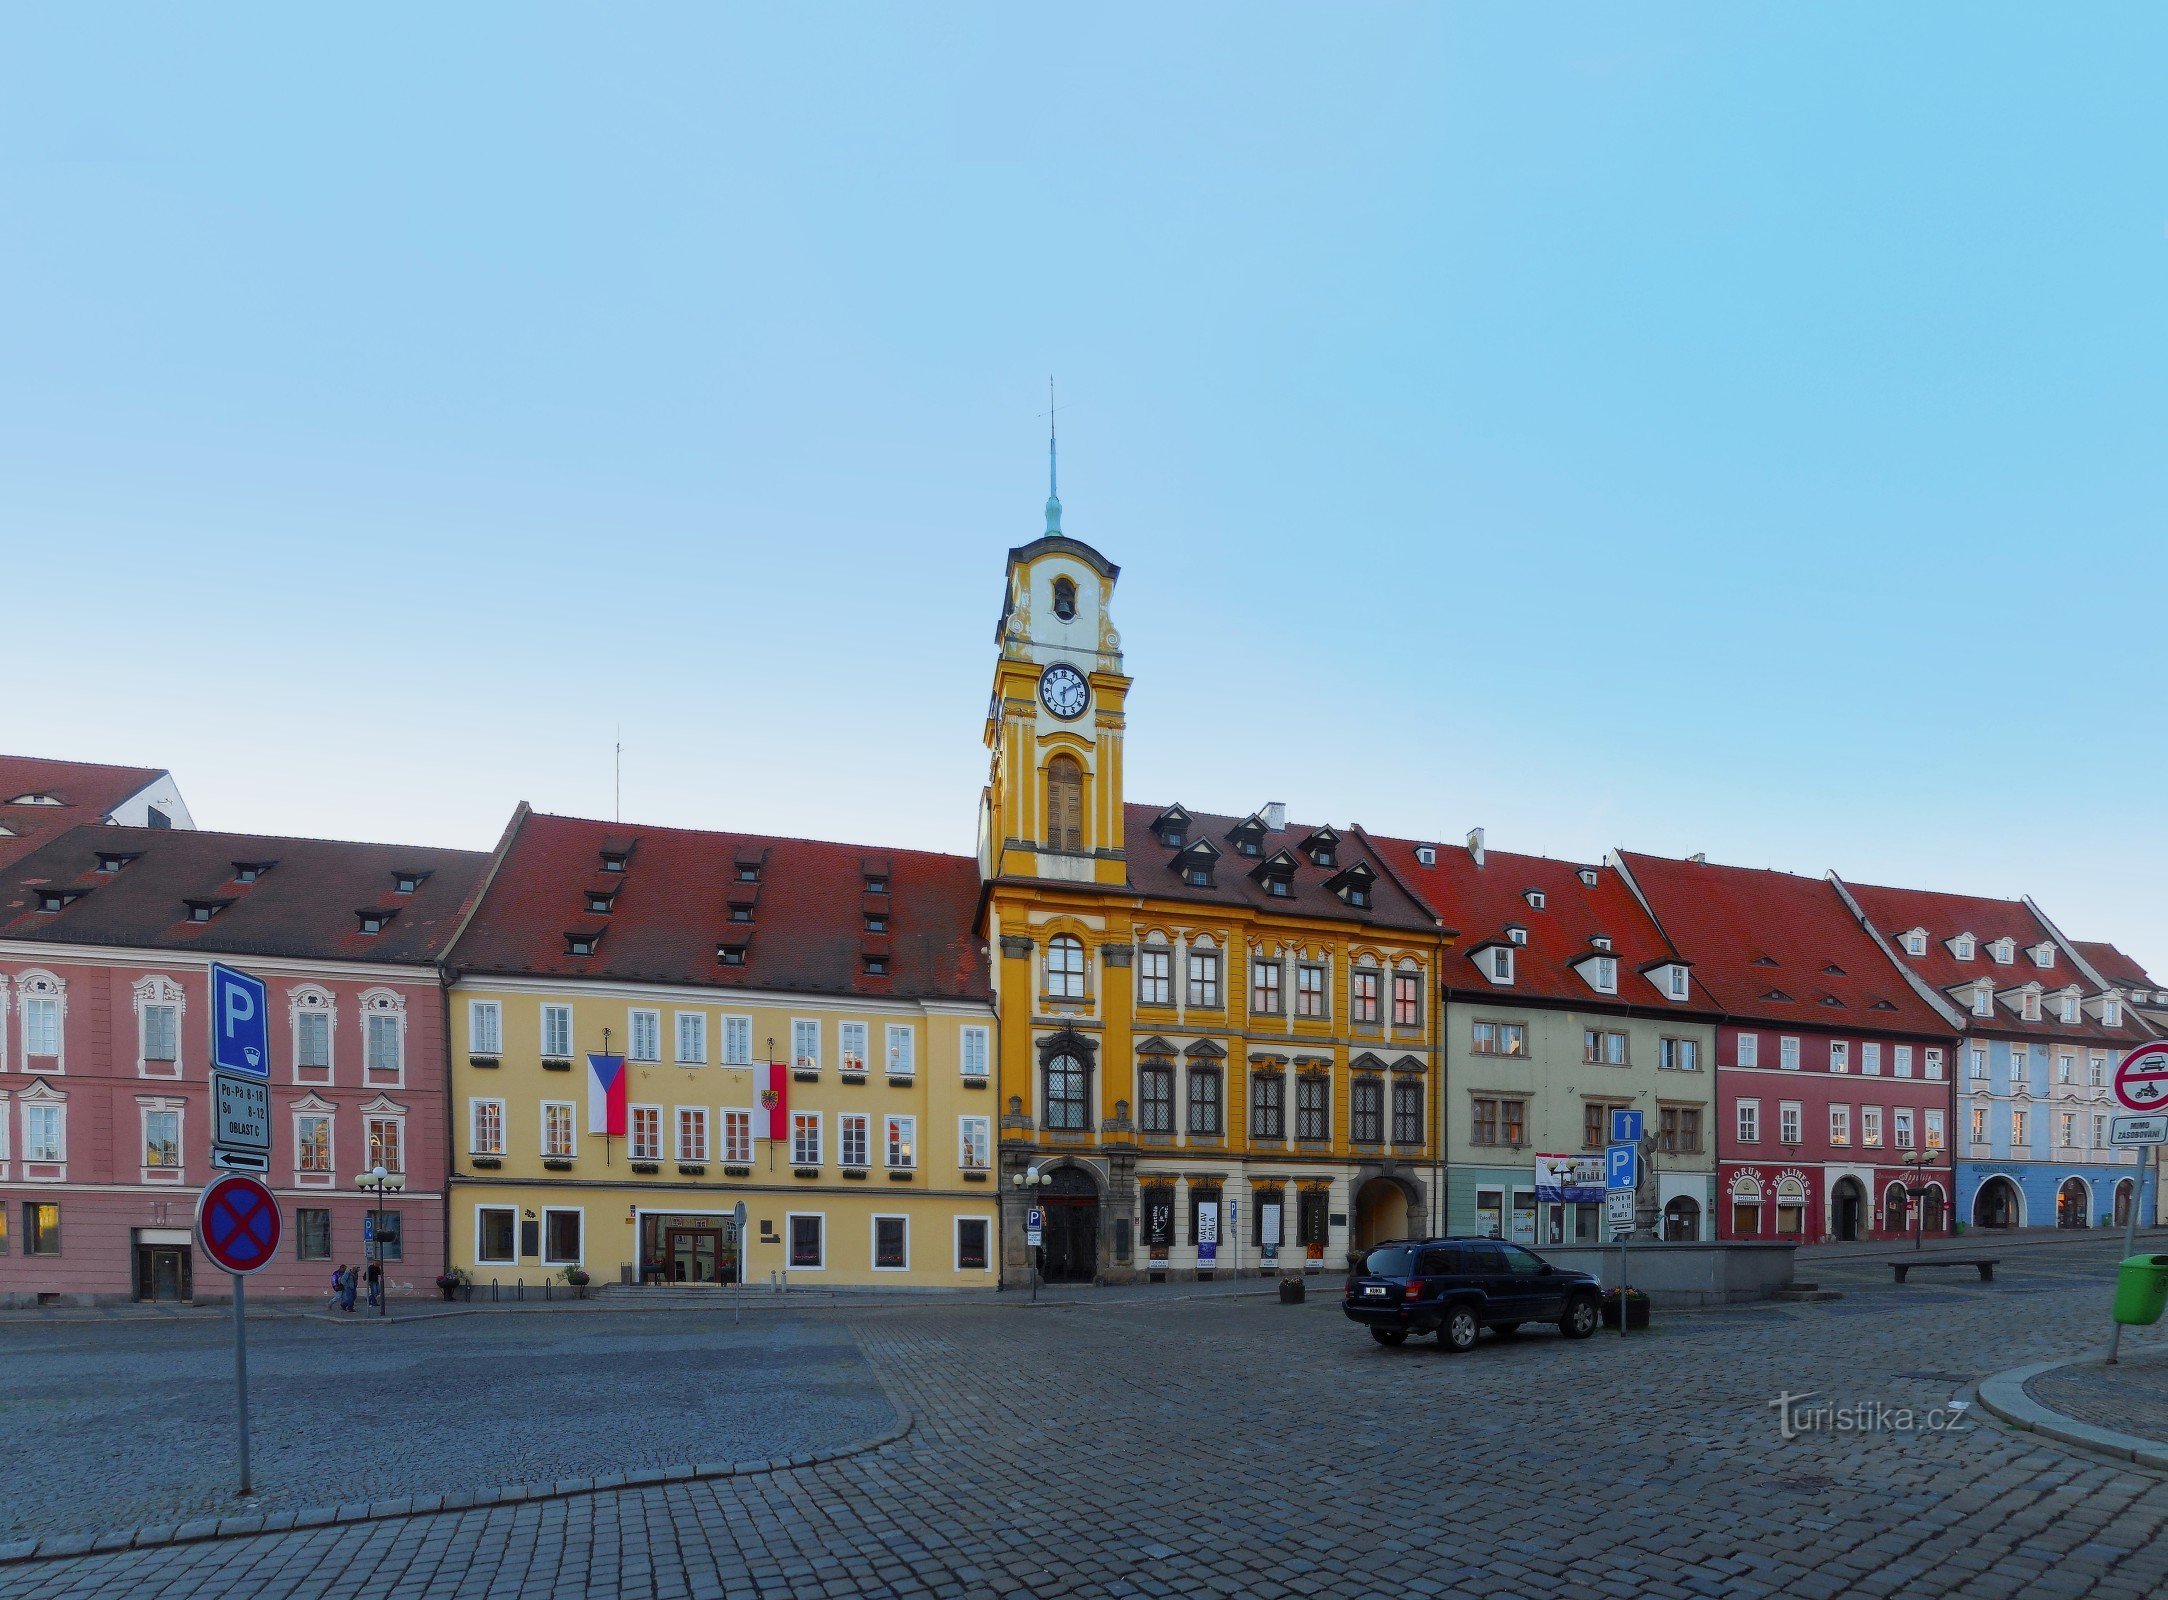 Uusi kaupungintalo, Krále Jiřího z Poděbrady -aukio, Cheb